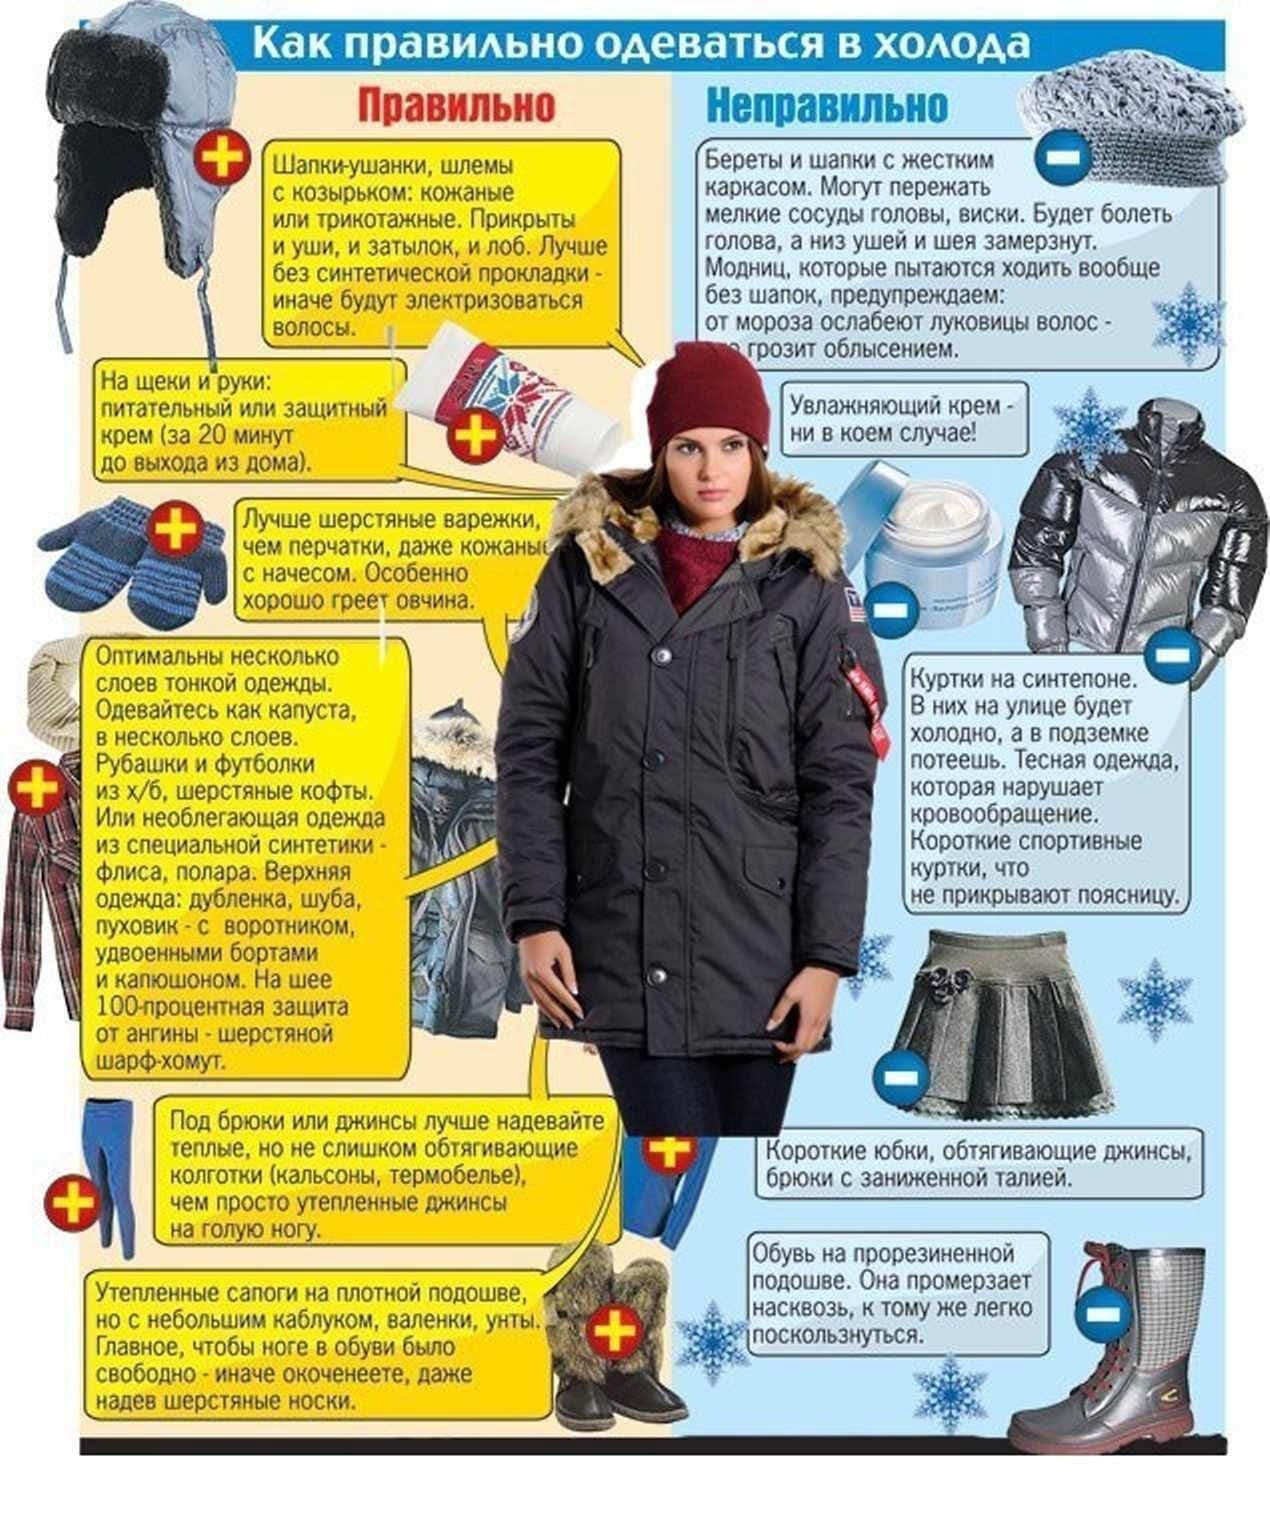 Одеваться тепло надо. Правильная одежда зимой. КВК правилтео одеватся. Как правильно одеваться зимой. Одеваться зимой в Мороз.